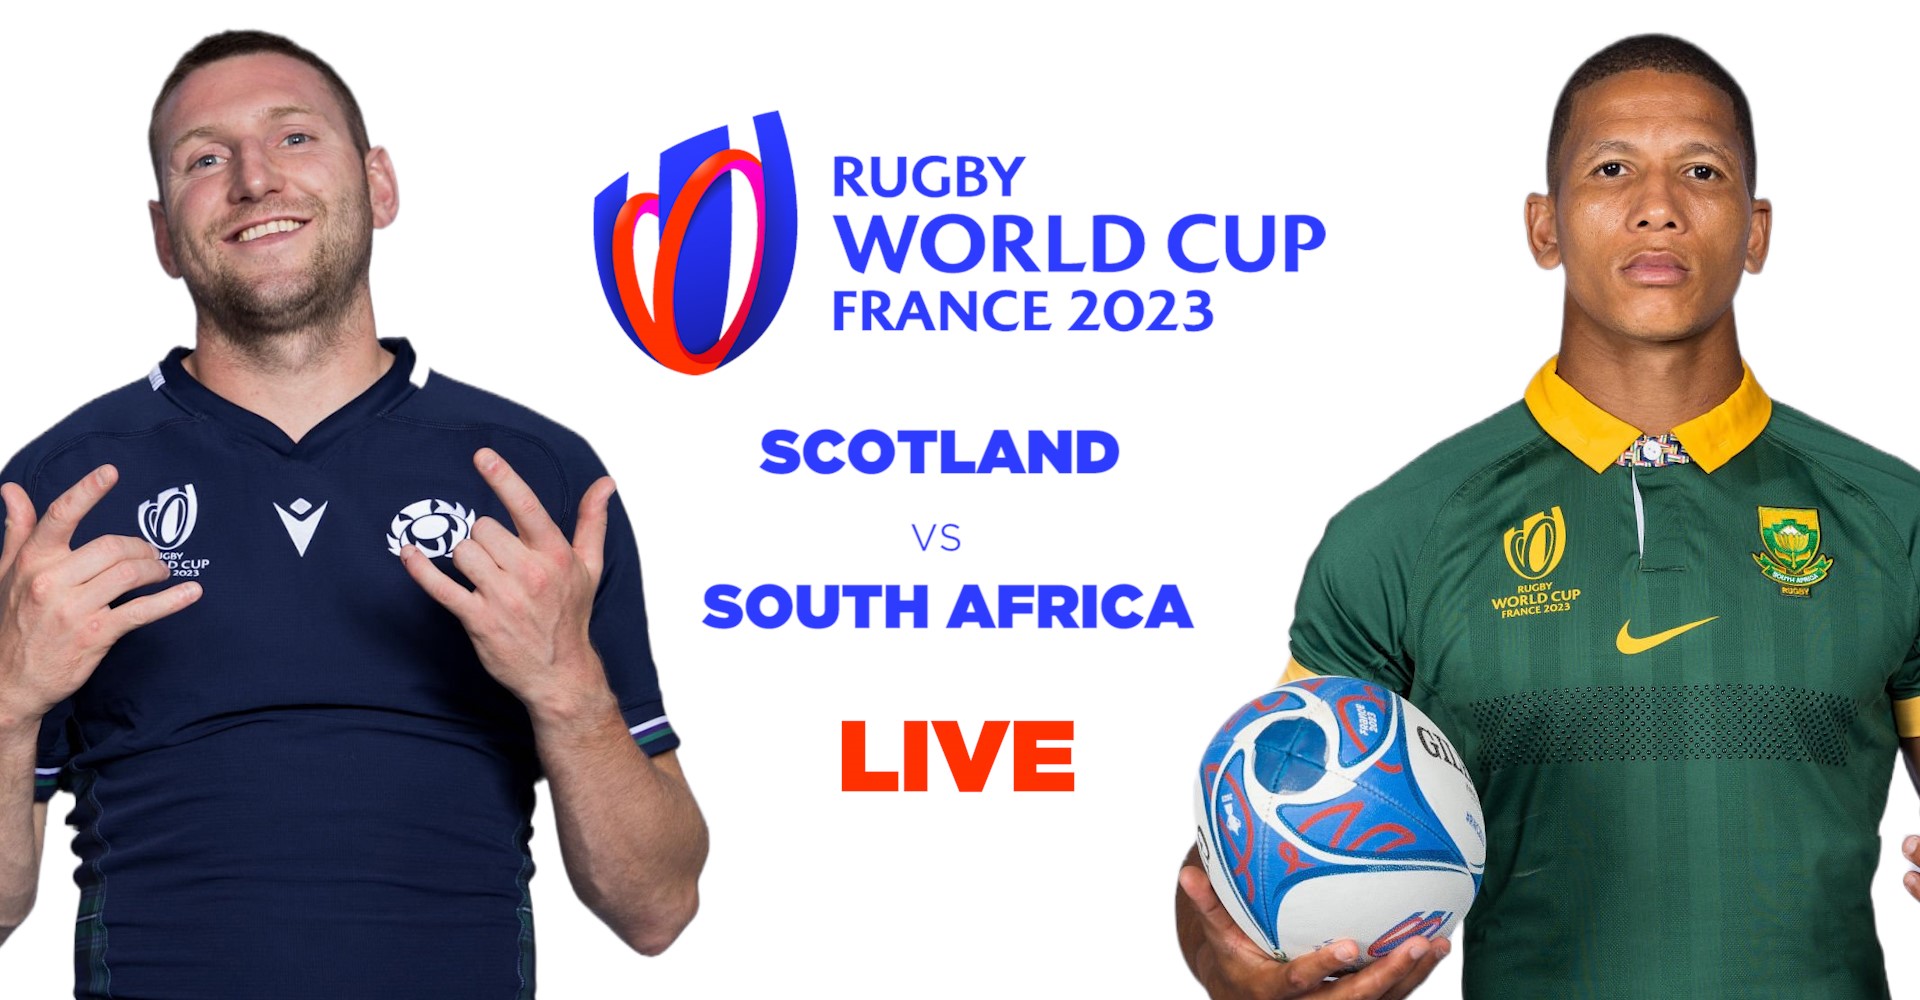 Scotland vs South Africa RWC LIVE